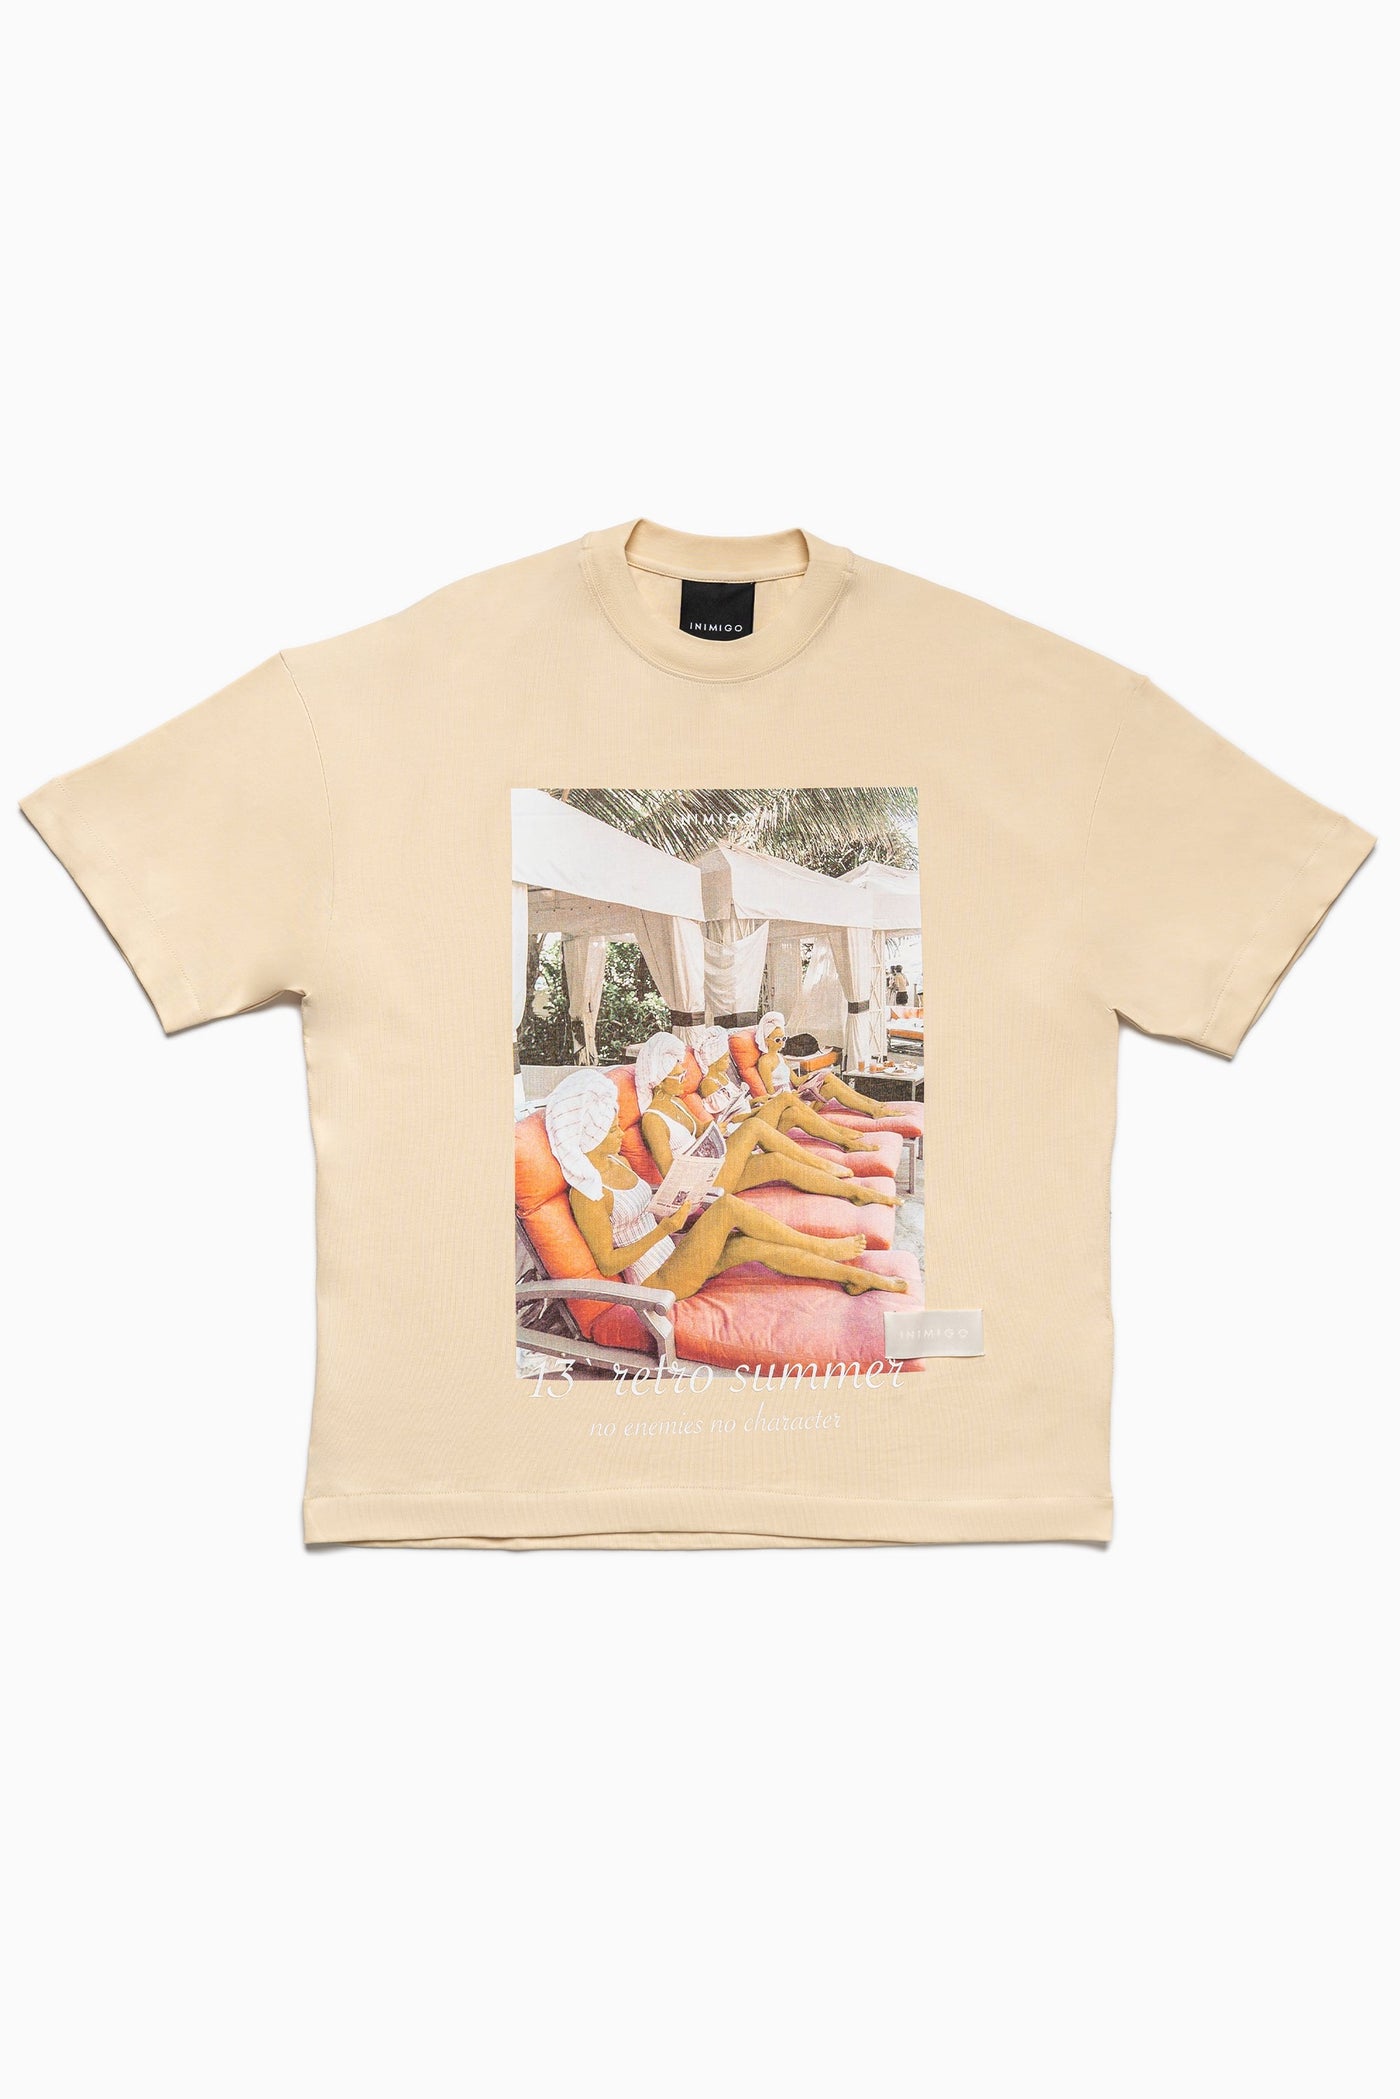 T-shirt oversize chaise longue des années 80